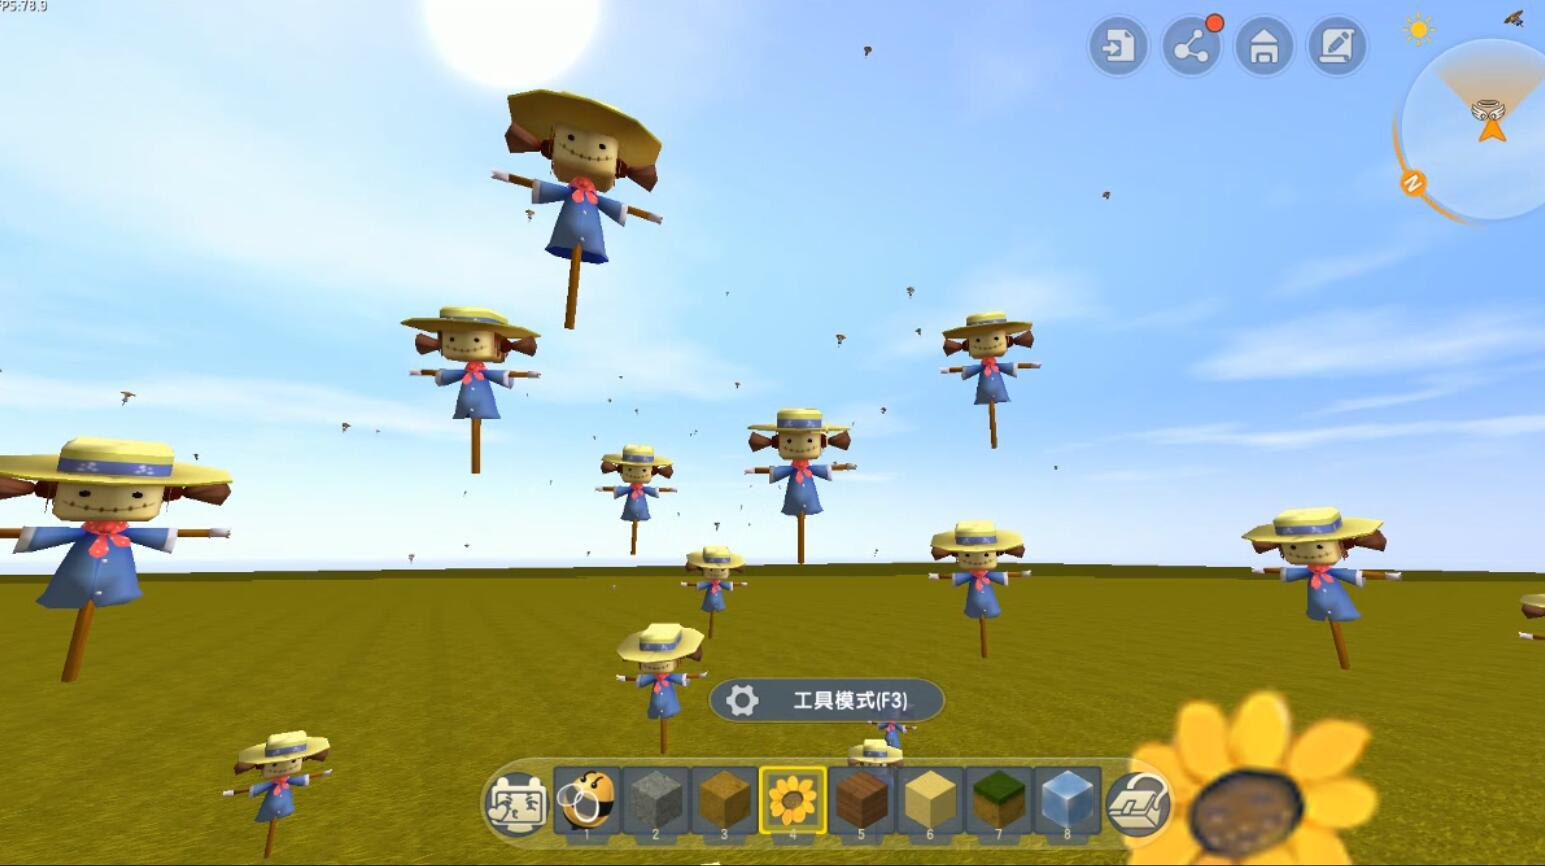 迷你世界:会飞的迷你型稻草人的制作教程